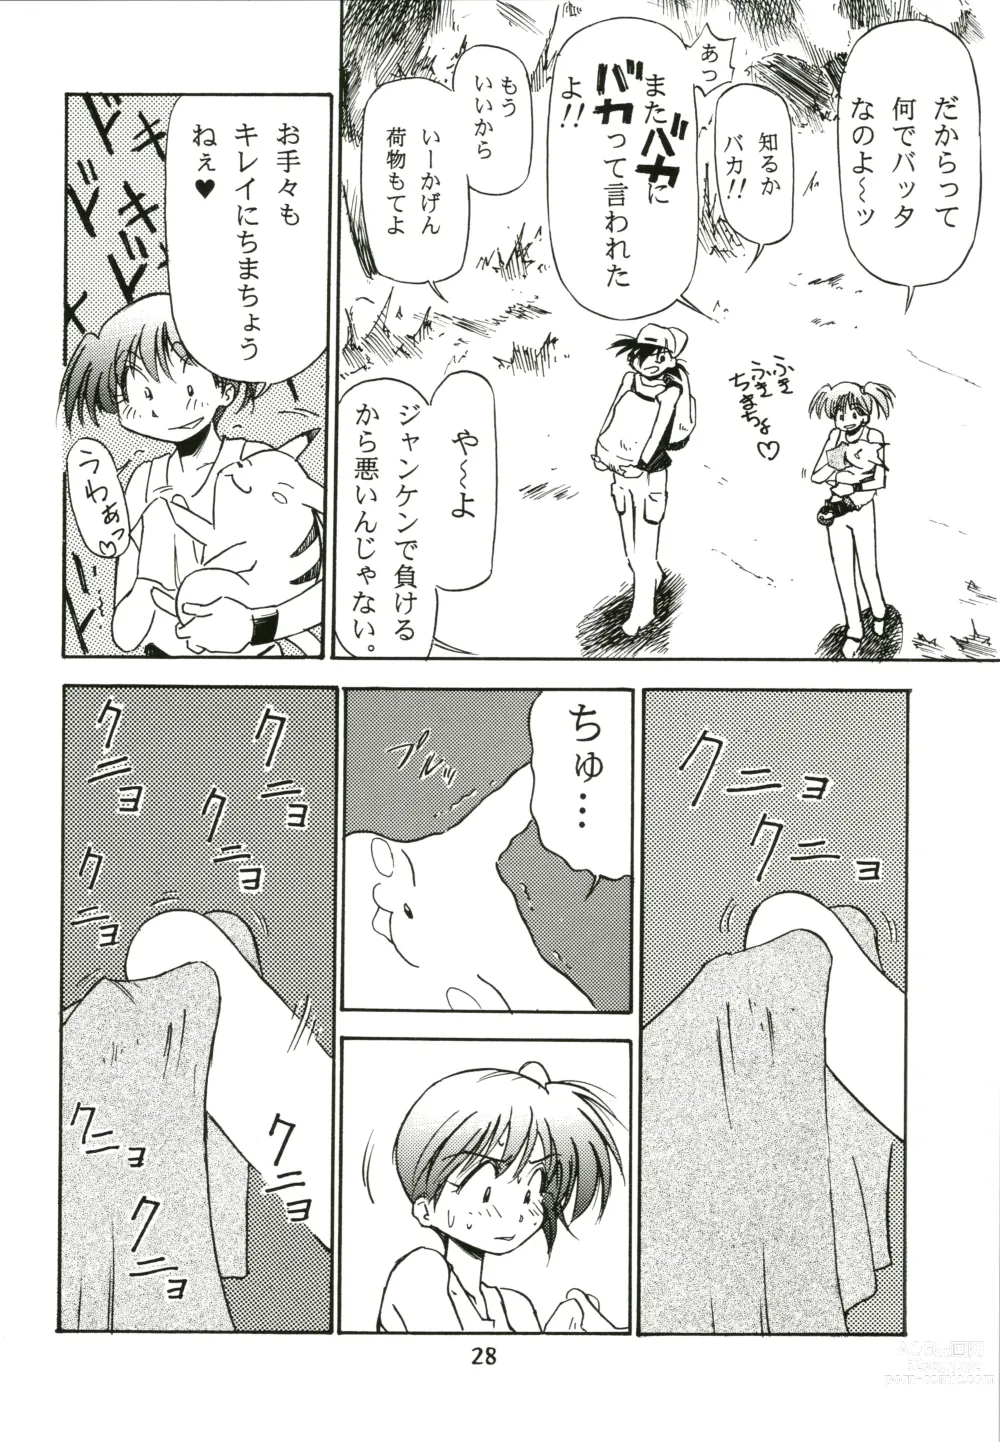 Page 28 of doujinshi Sakura Ame